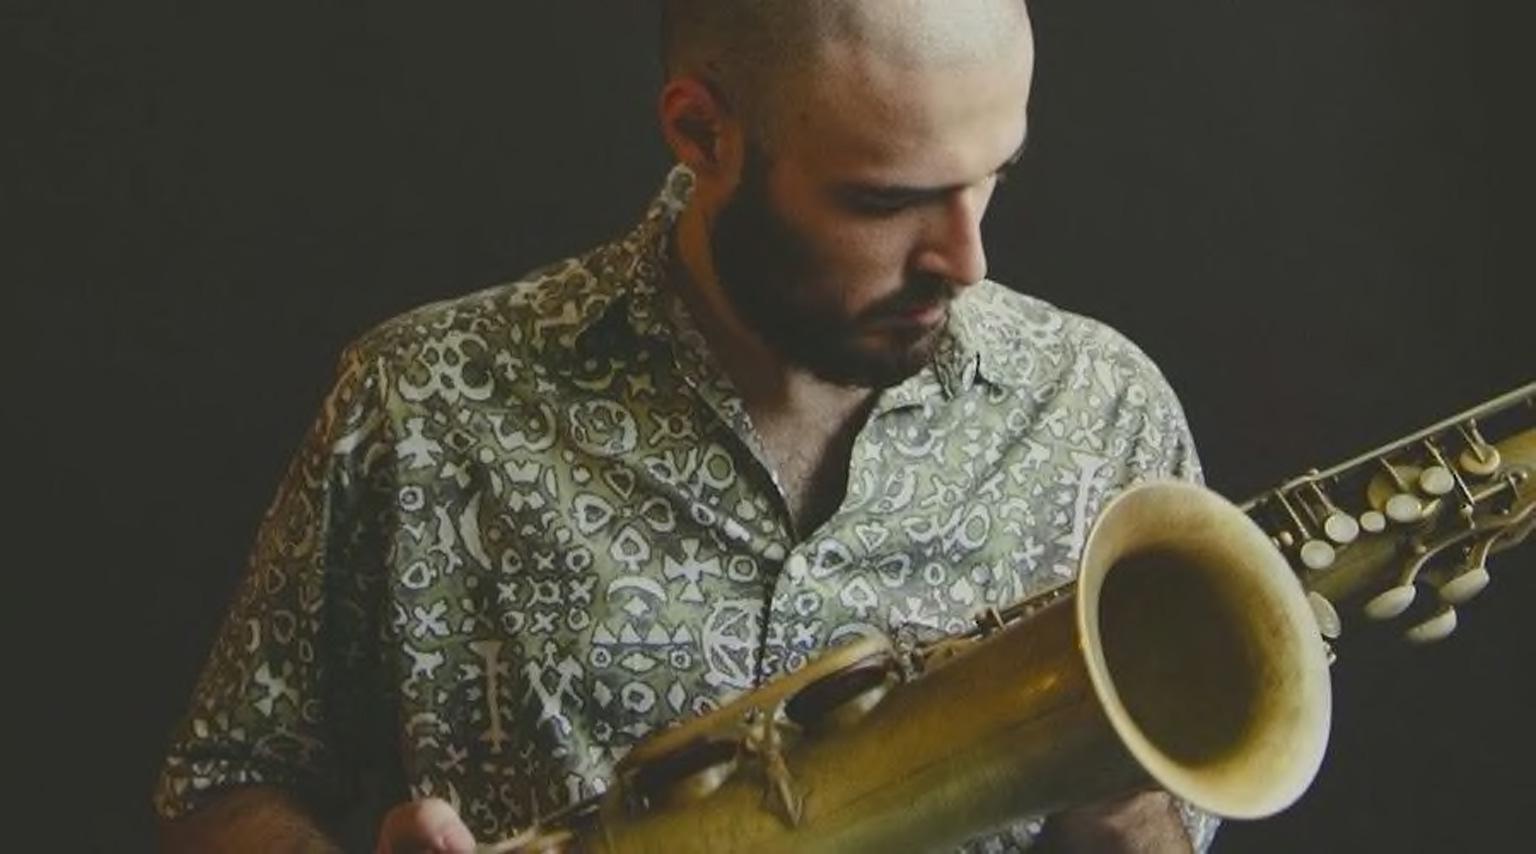 Photograph of Daniel Juárez with saxophone.